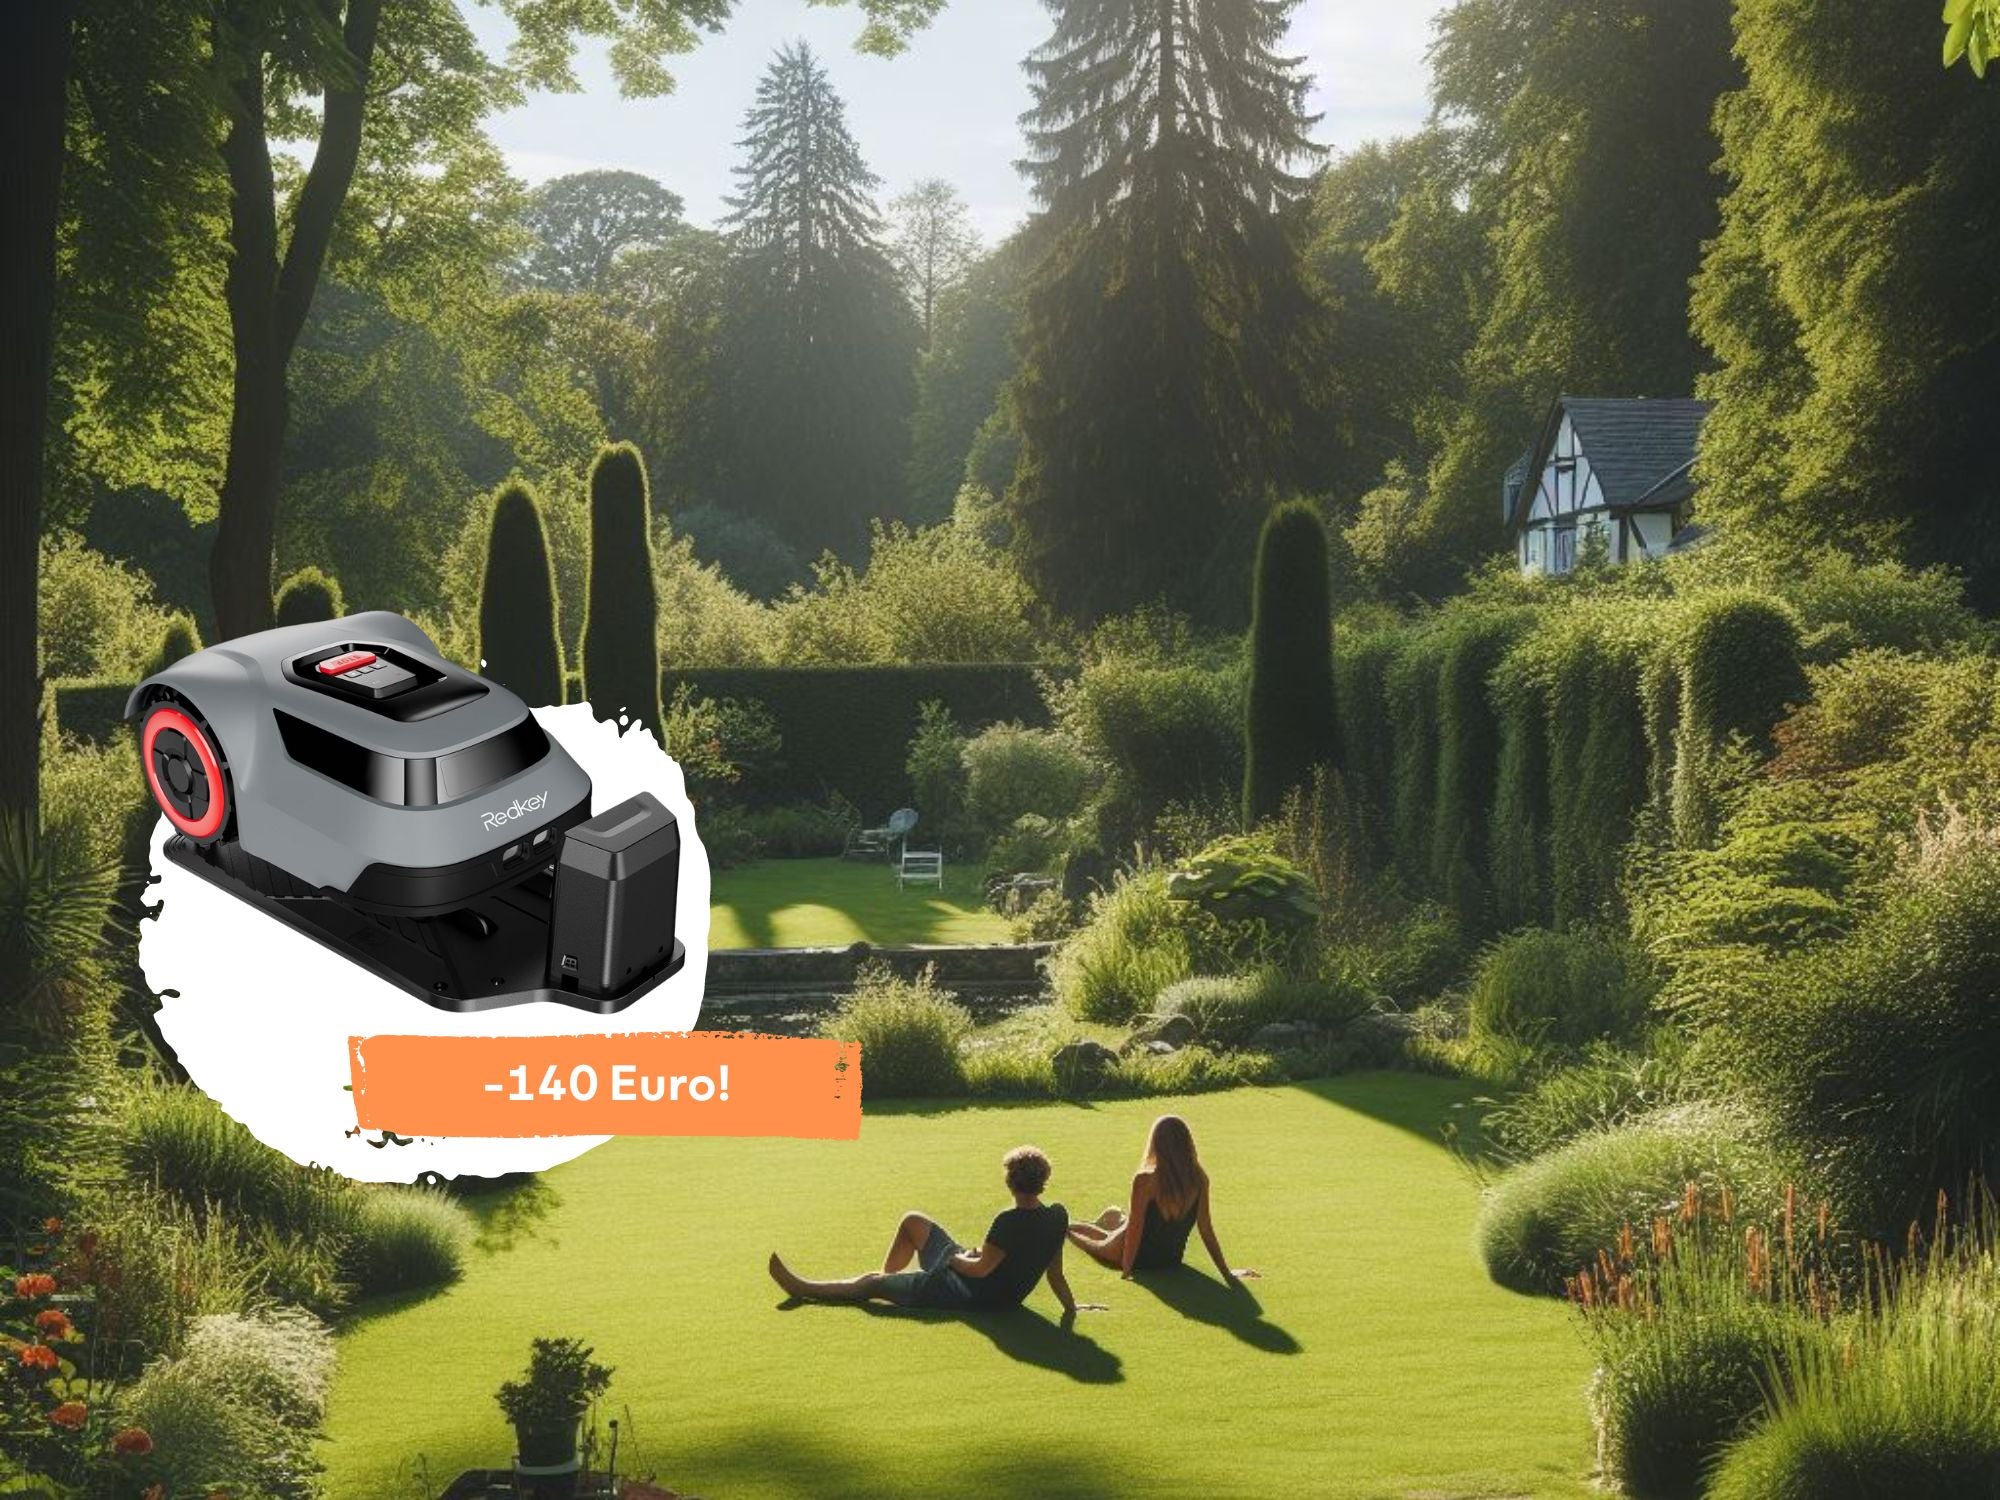 #Präziser als viele andere Modelle: Mähroboter für große Gärten bei Amazon 140 Euro günstiger